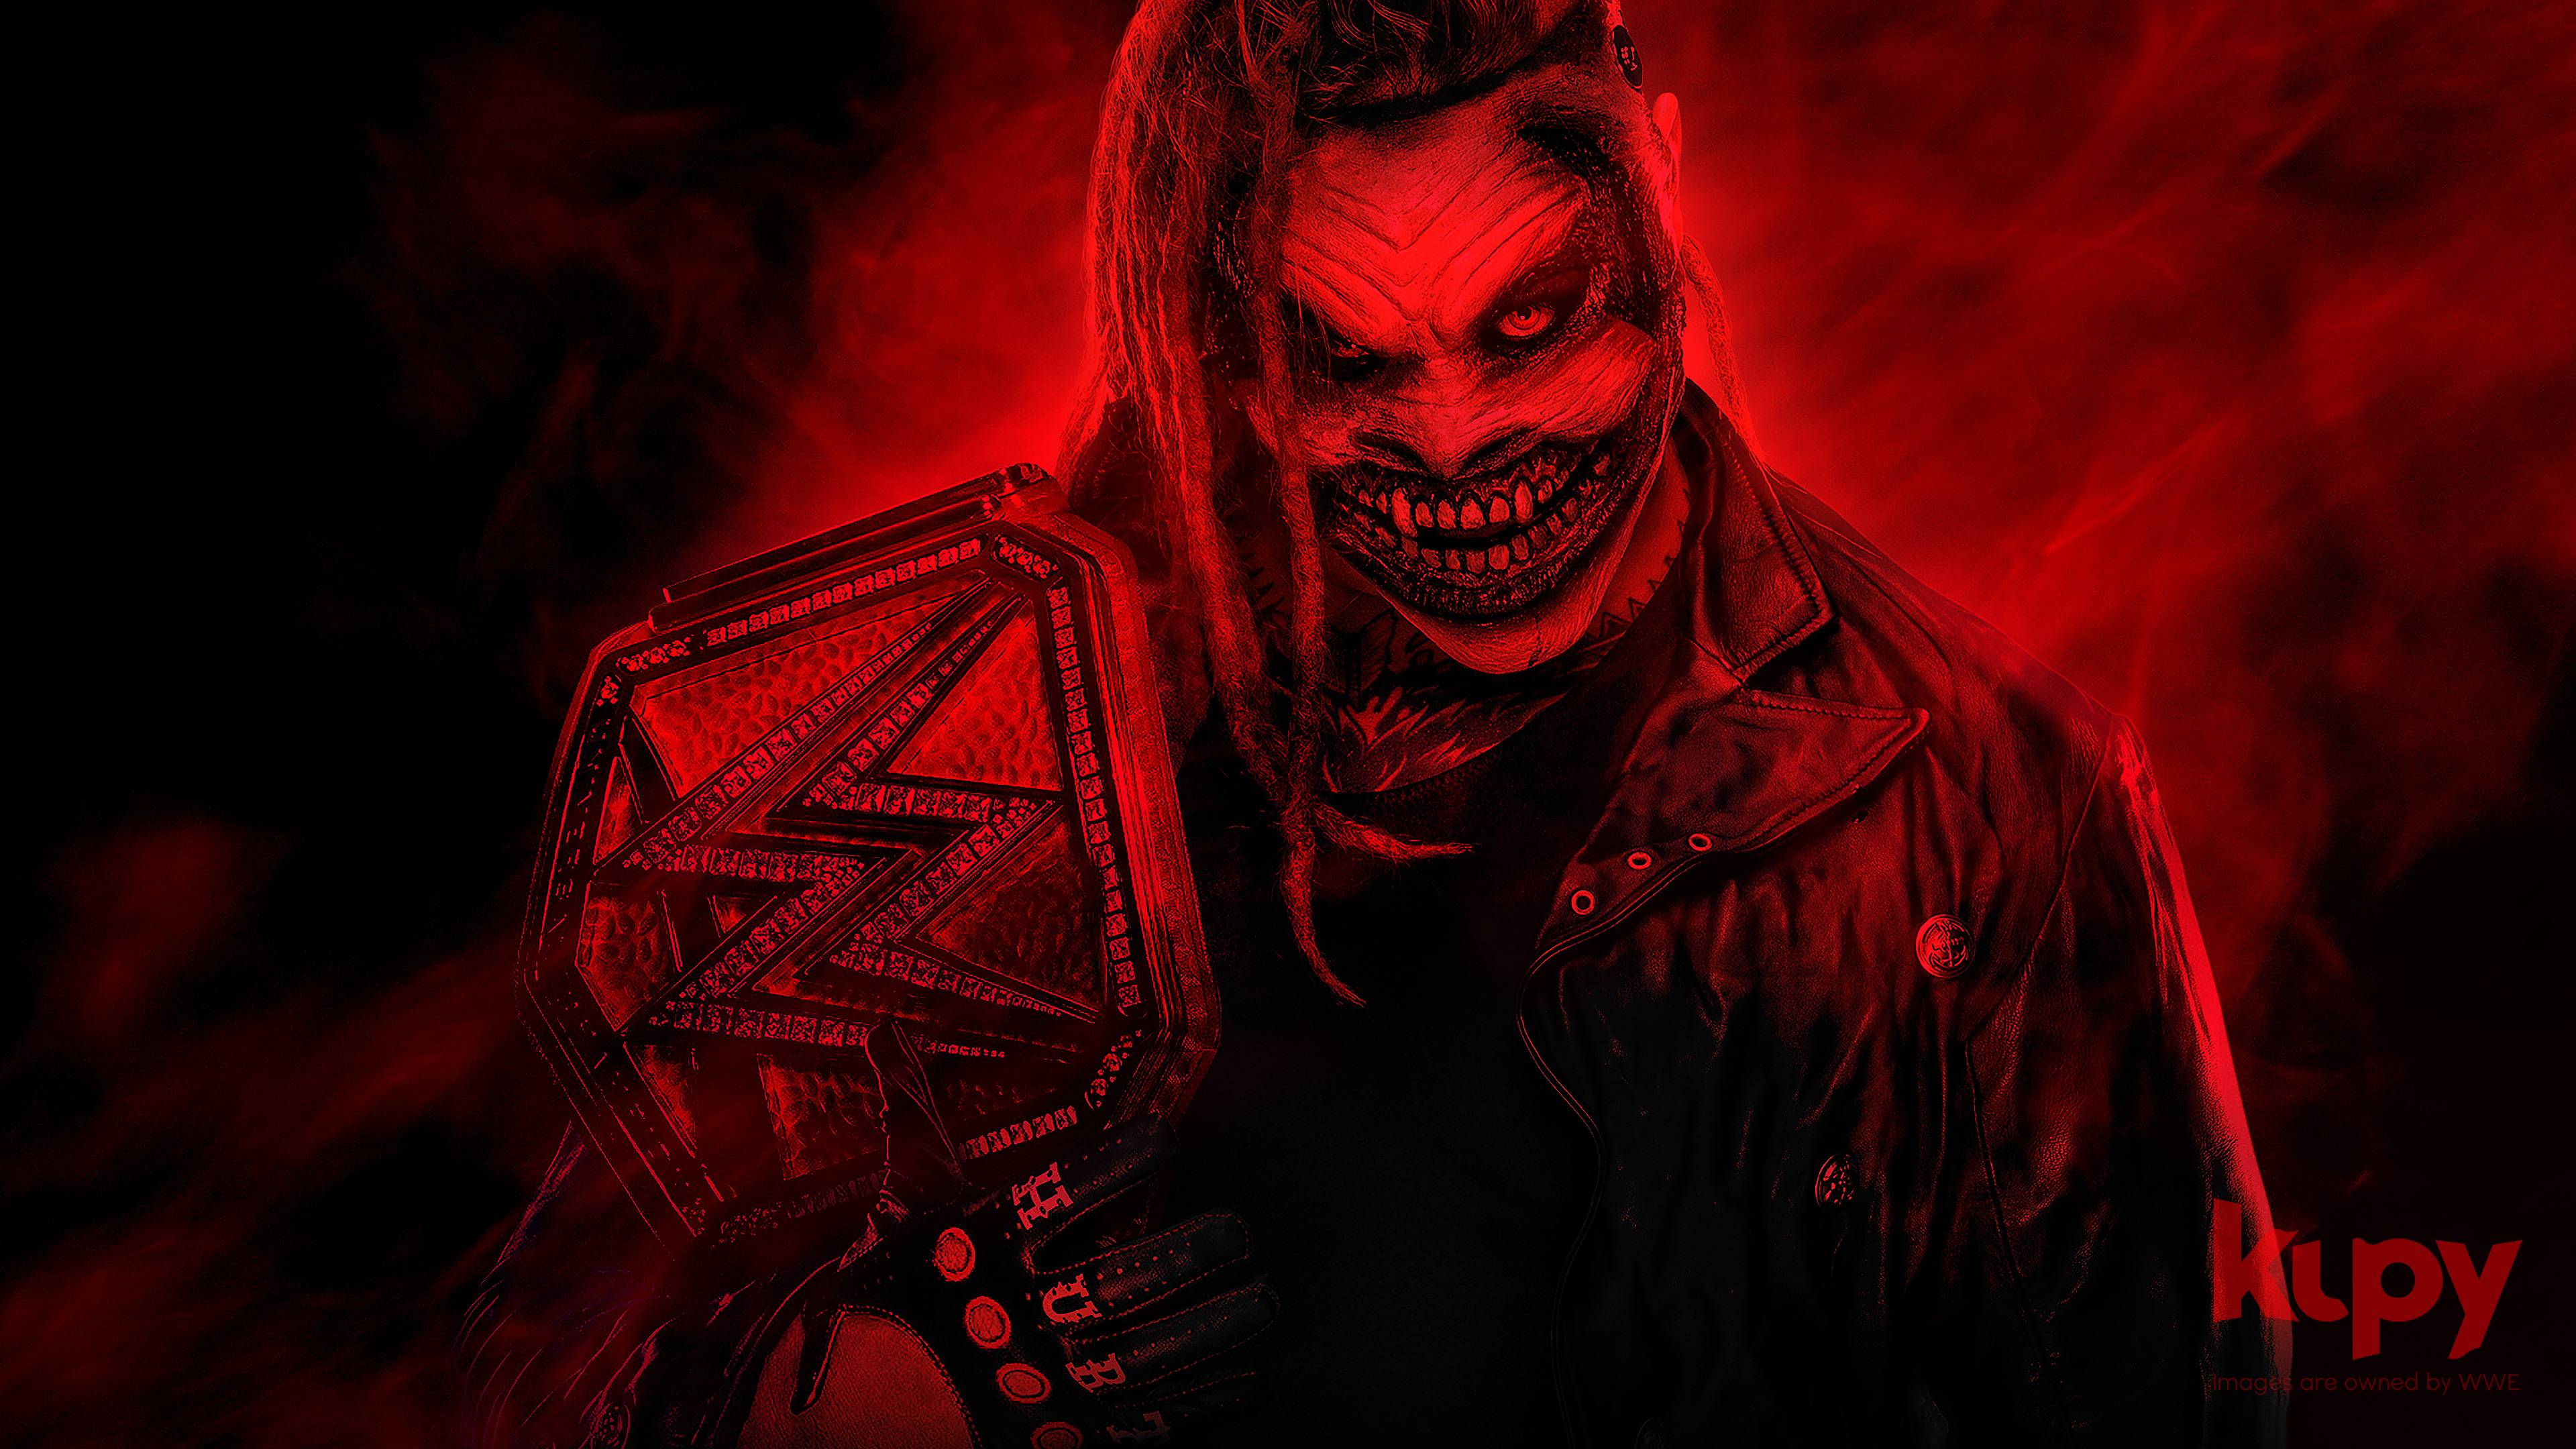 Bray Wyatt The Fiend wallpaper  Kupy Wrestling Wallpapers